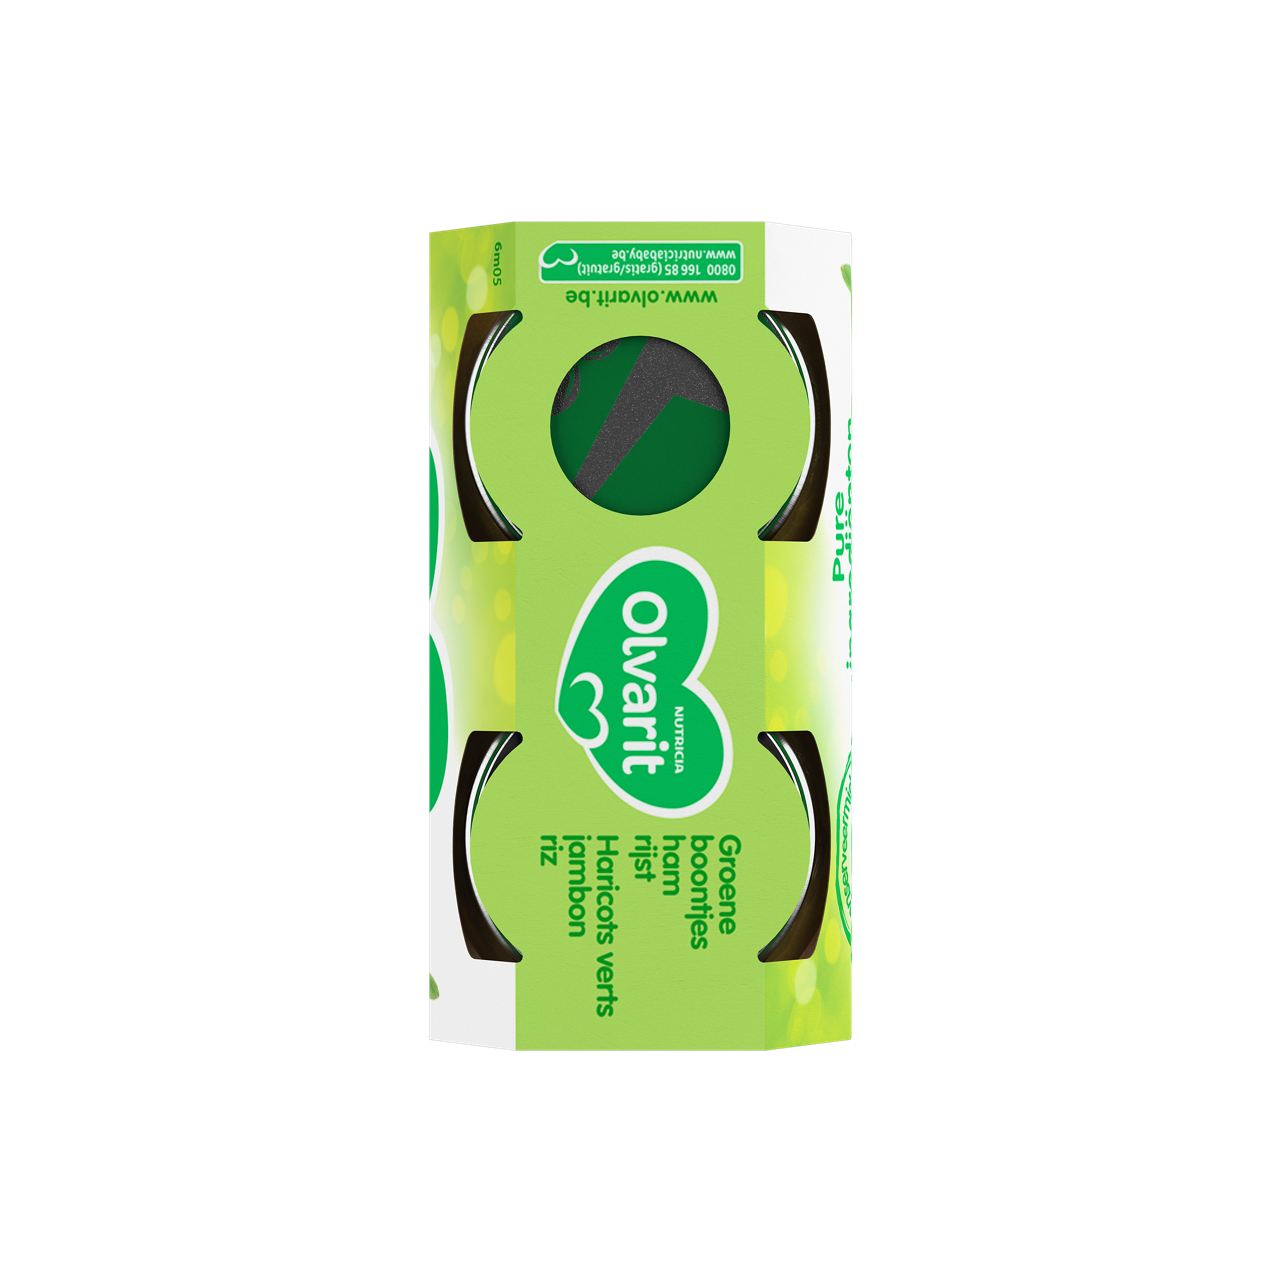 Olvarit Haricots verts Jambon Riz (200 g) Consultez notre site web Olvarit.be pour plus d'info sur alimentation pour bébé et les produits Olvarit.